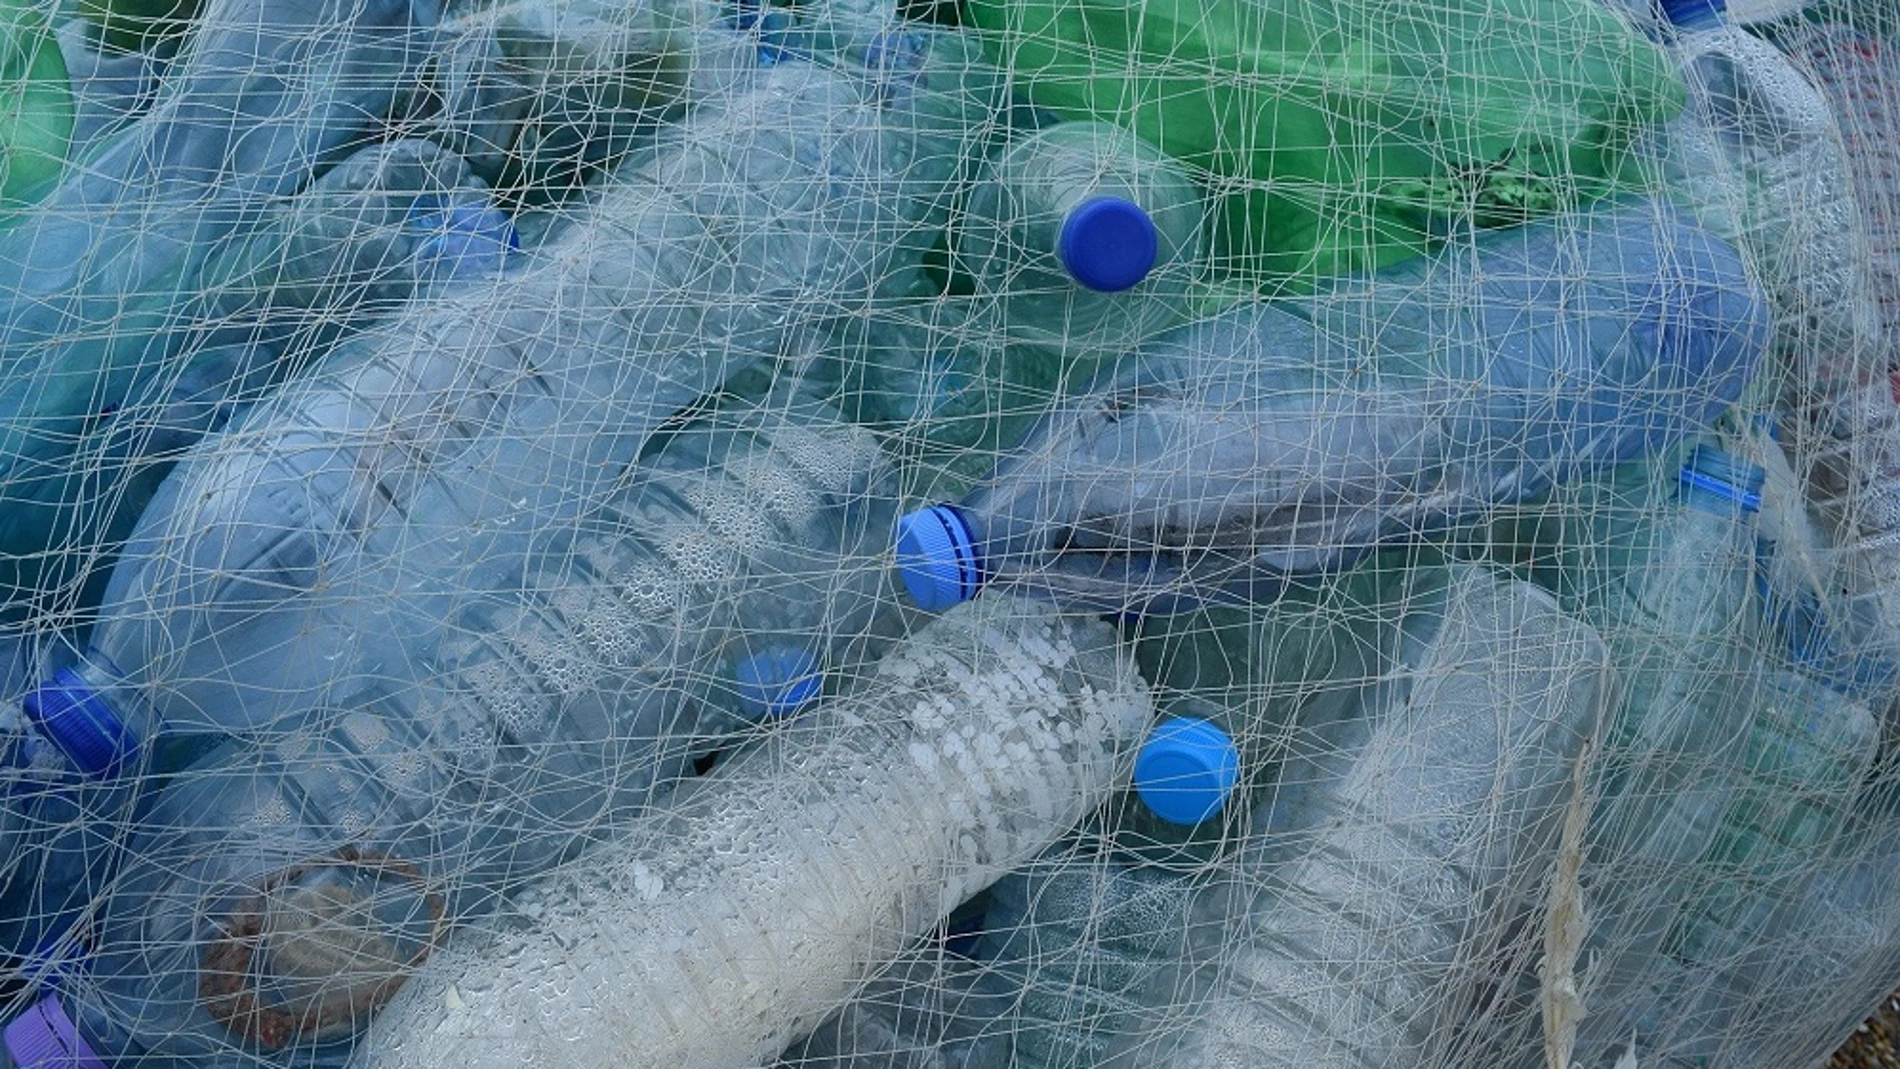 Imagen de archivo de botellas de plástico